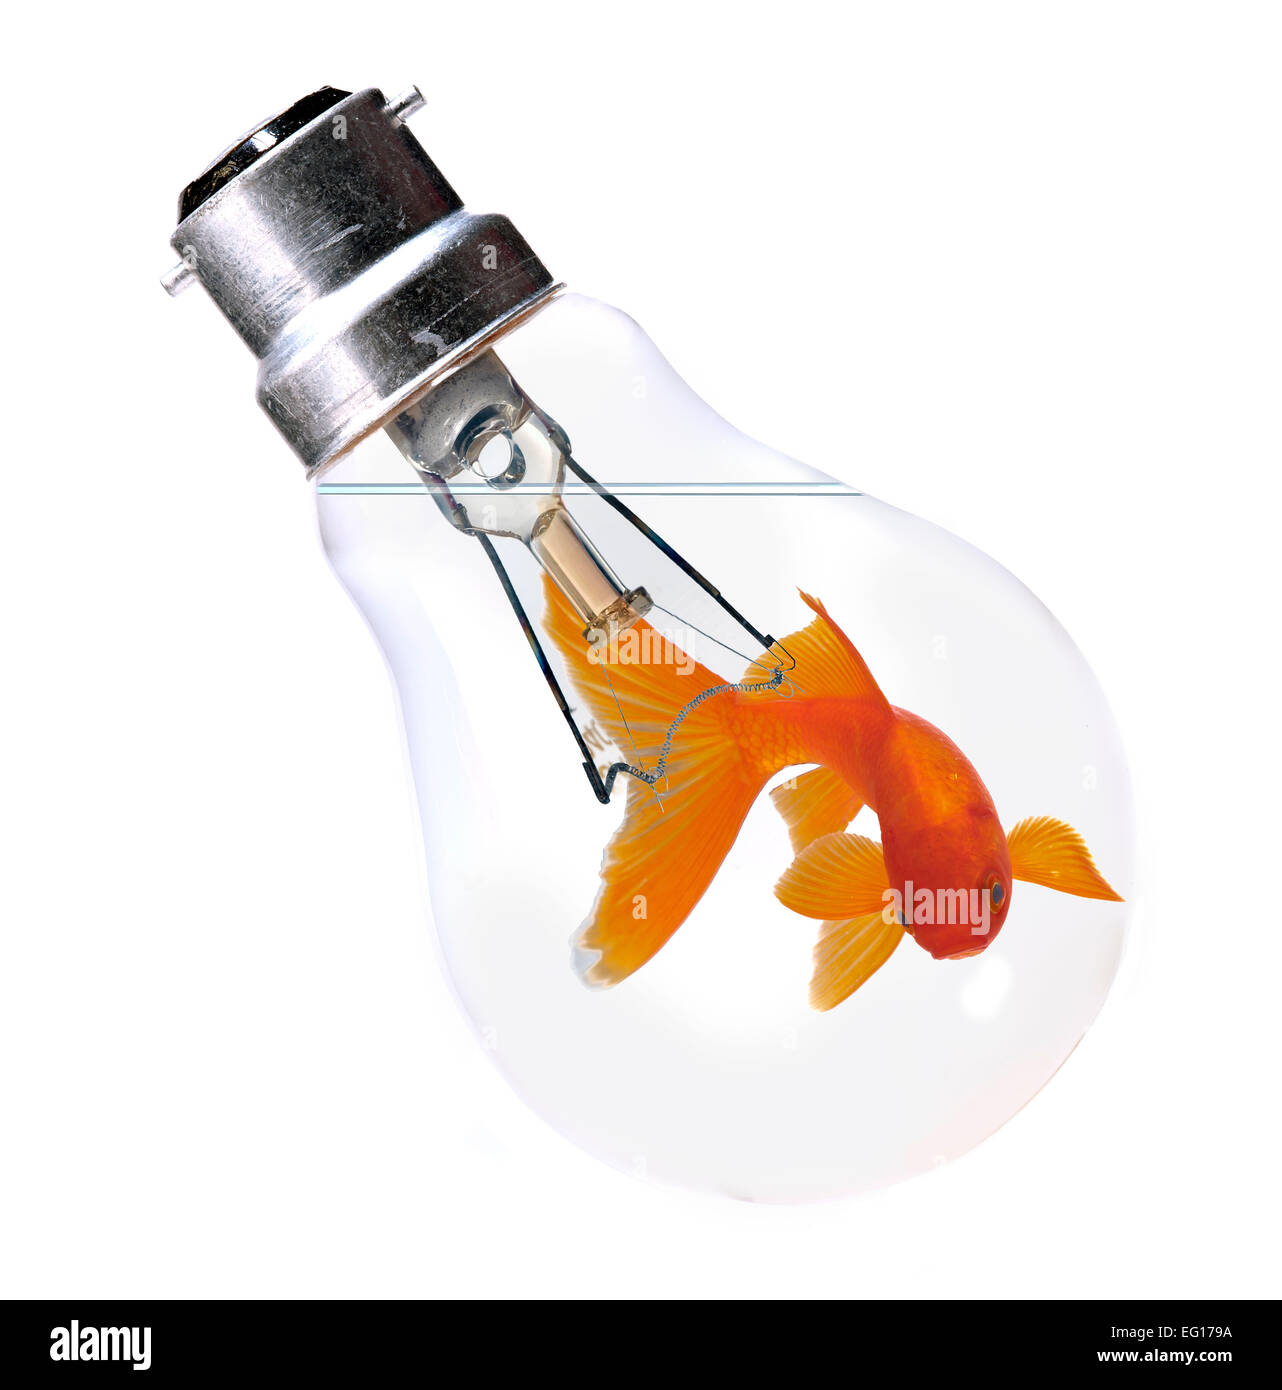 Les poissons rouges nageant dans une ampoule électrique Banque D'Images